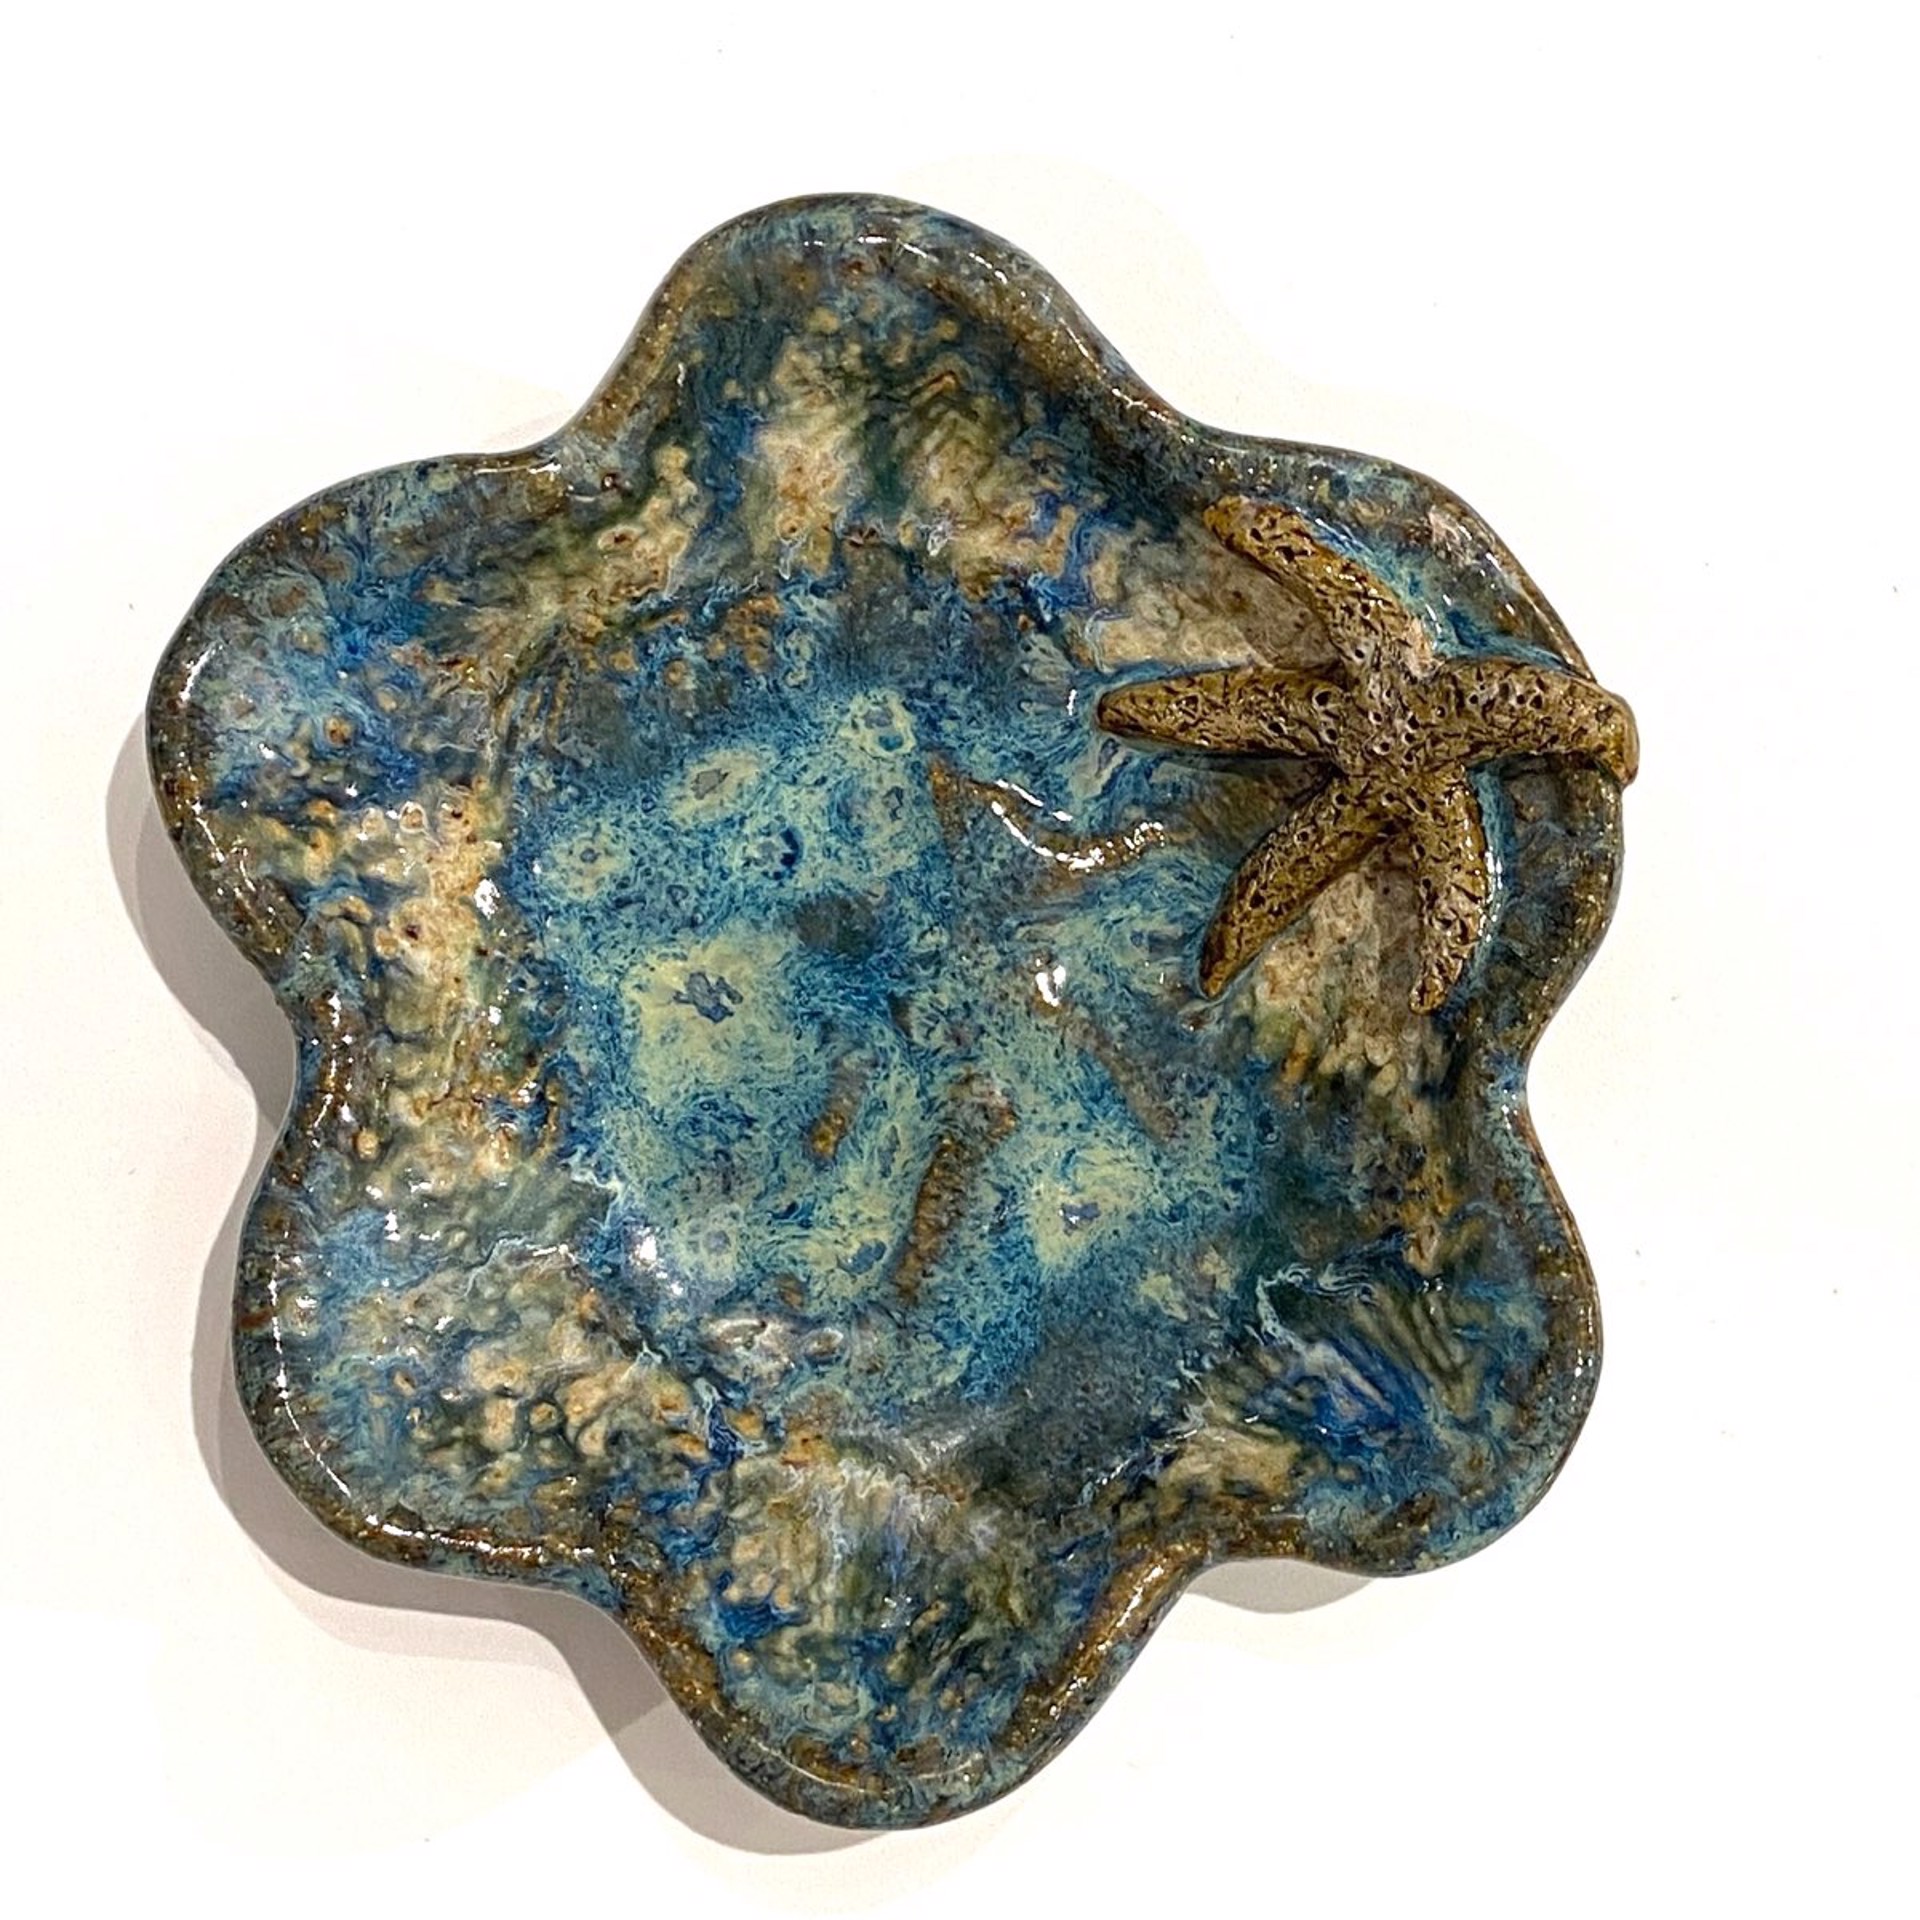 LG23-978 Mini Pool Dish with Starfish (Blue Glaze) by Jim & Steffi Logan